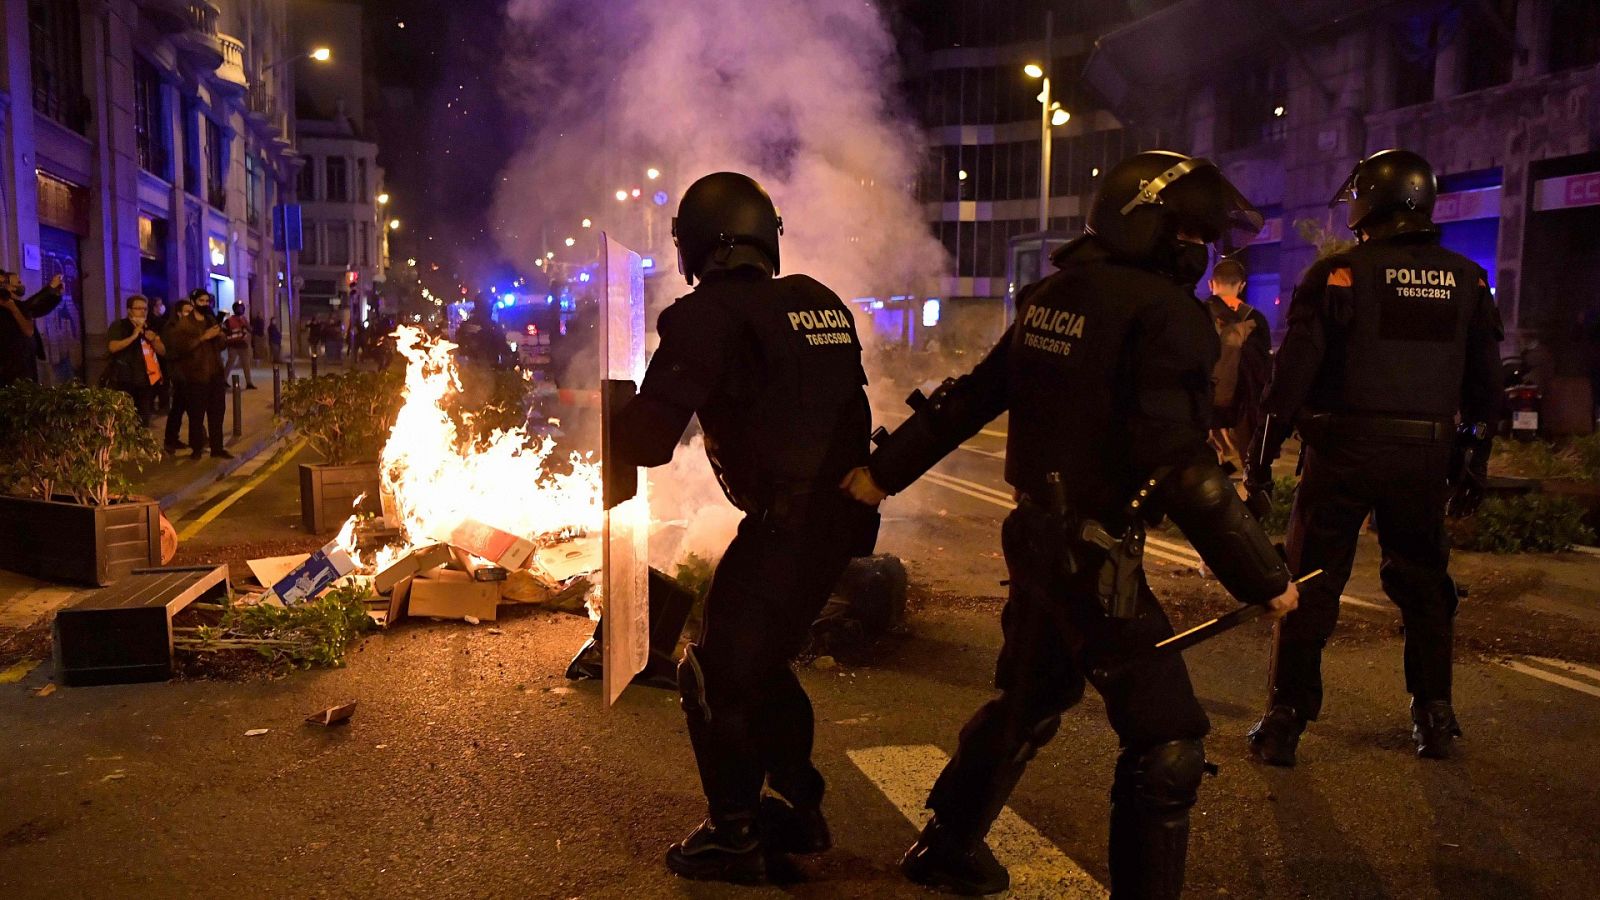 Incidentes en varias ciudades españolas en protestas anti-COVID